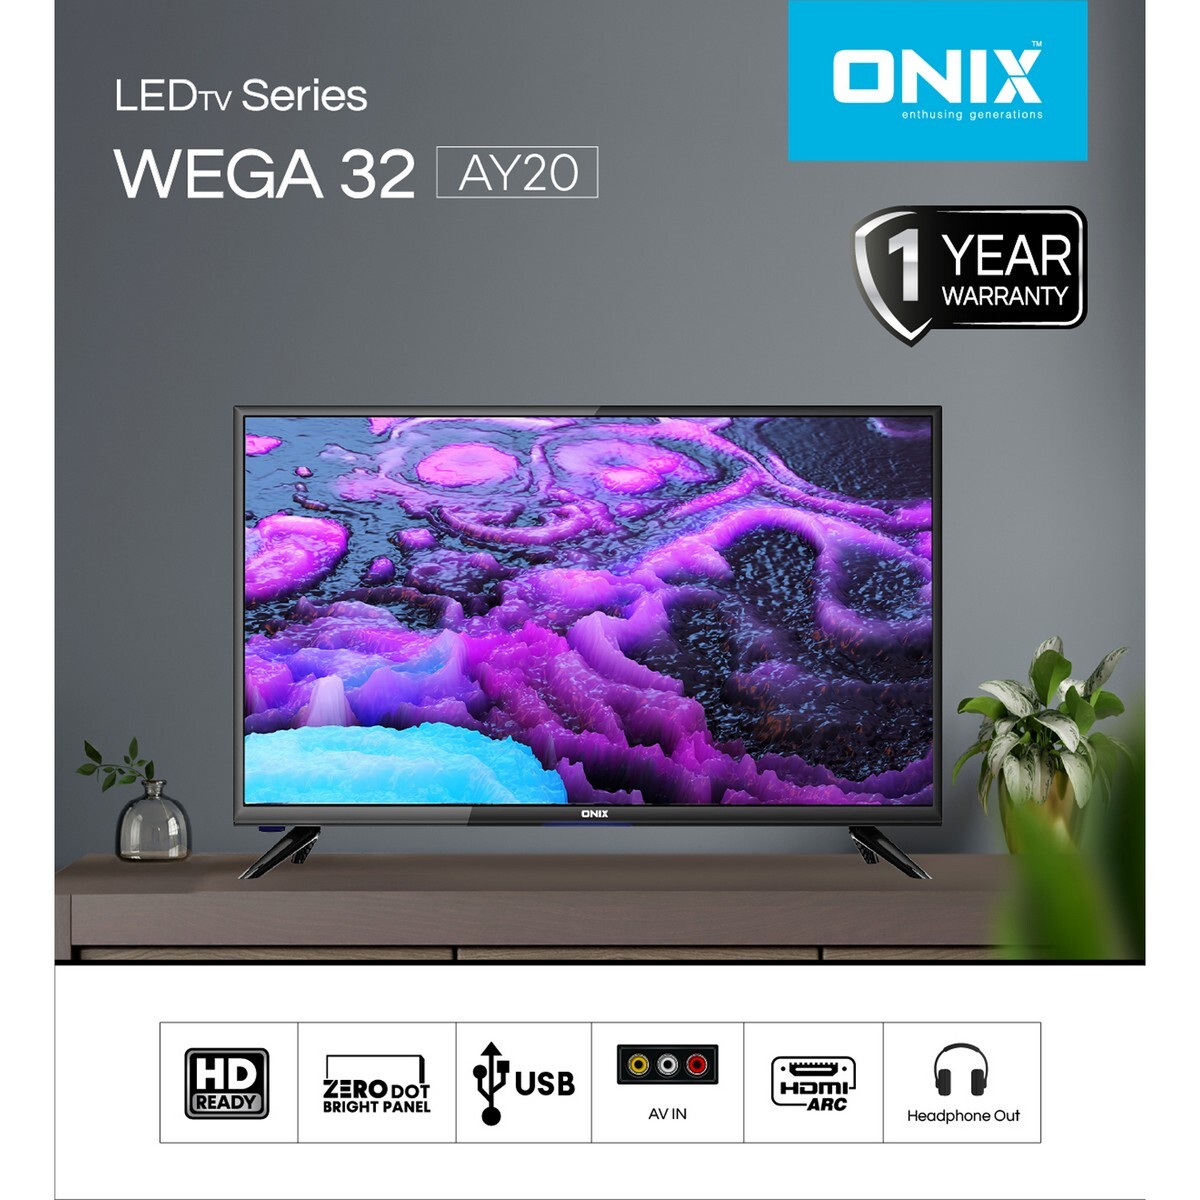 Onix HD Ready LED TV Wega AY20 32"